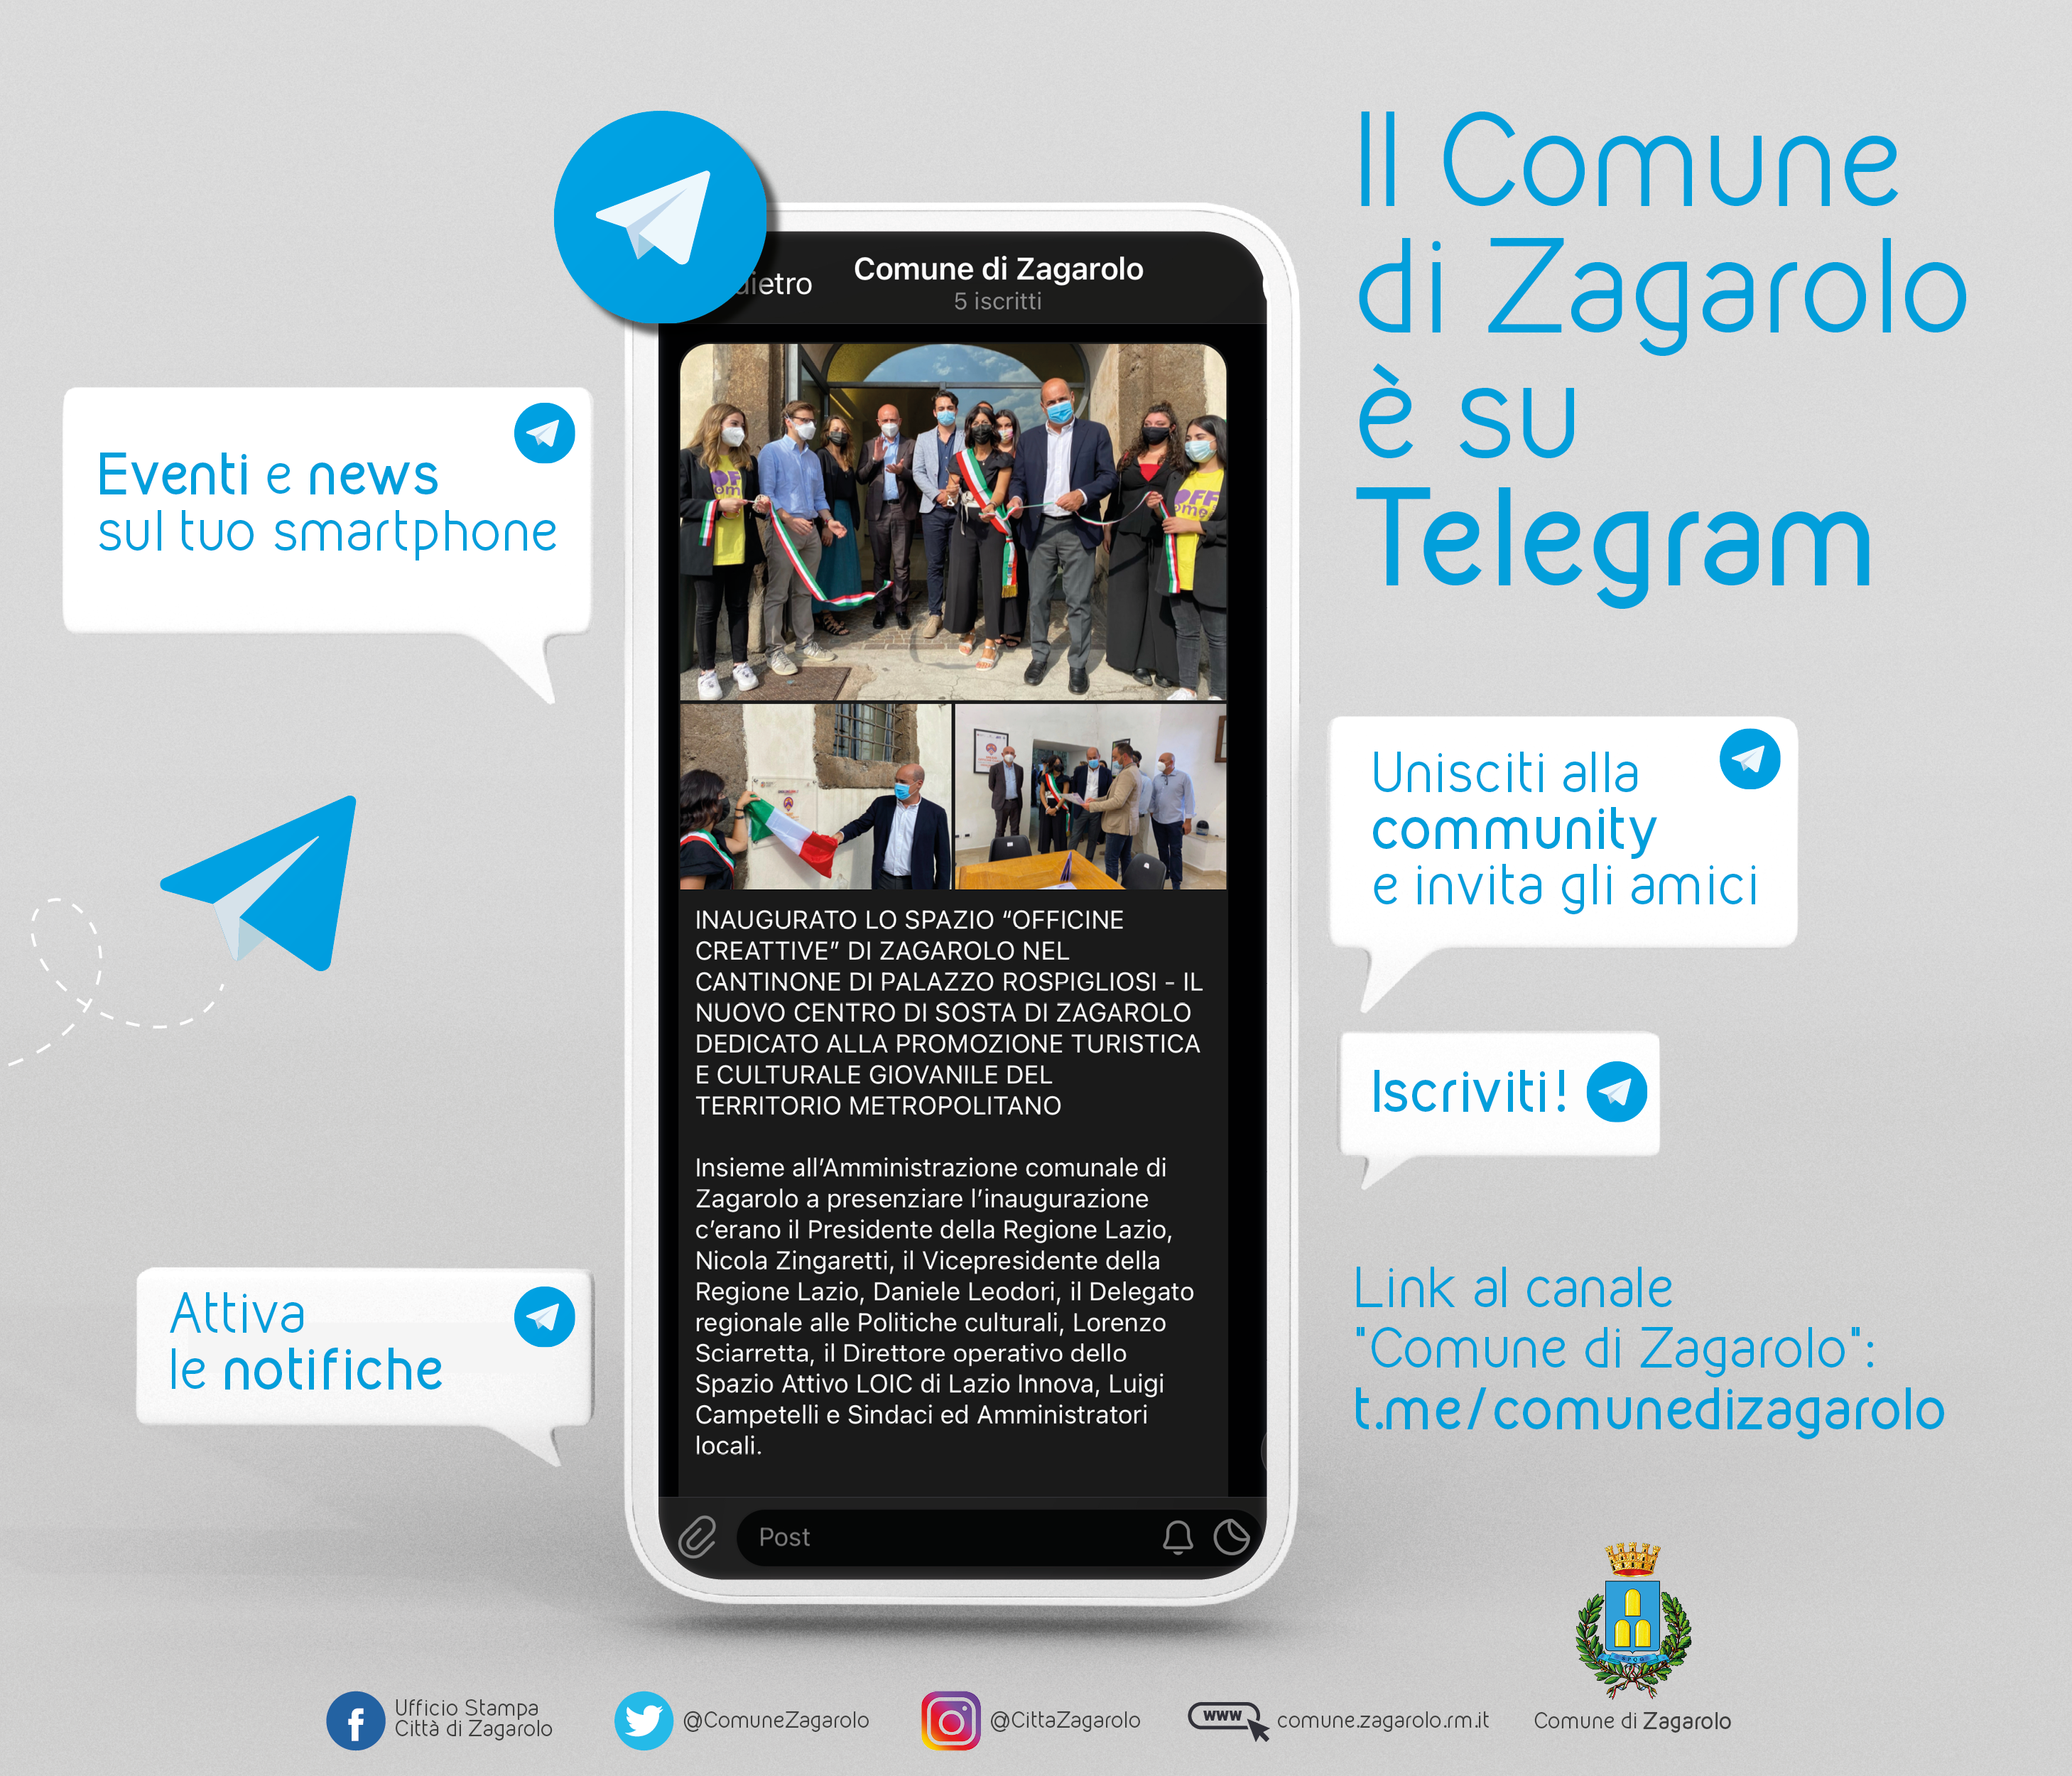 NASCE IL CANALE TELEGRAM DEL COMUNE DI ZAGAROLO